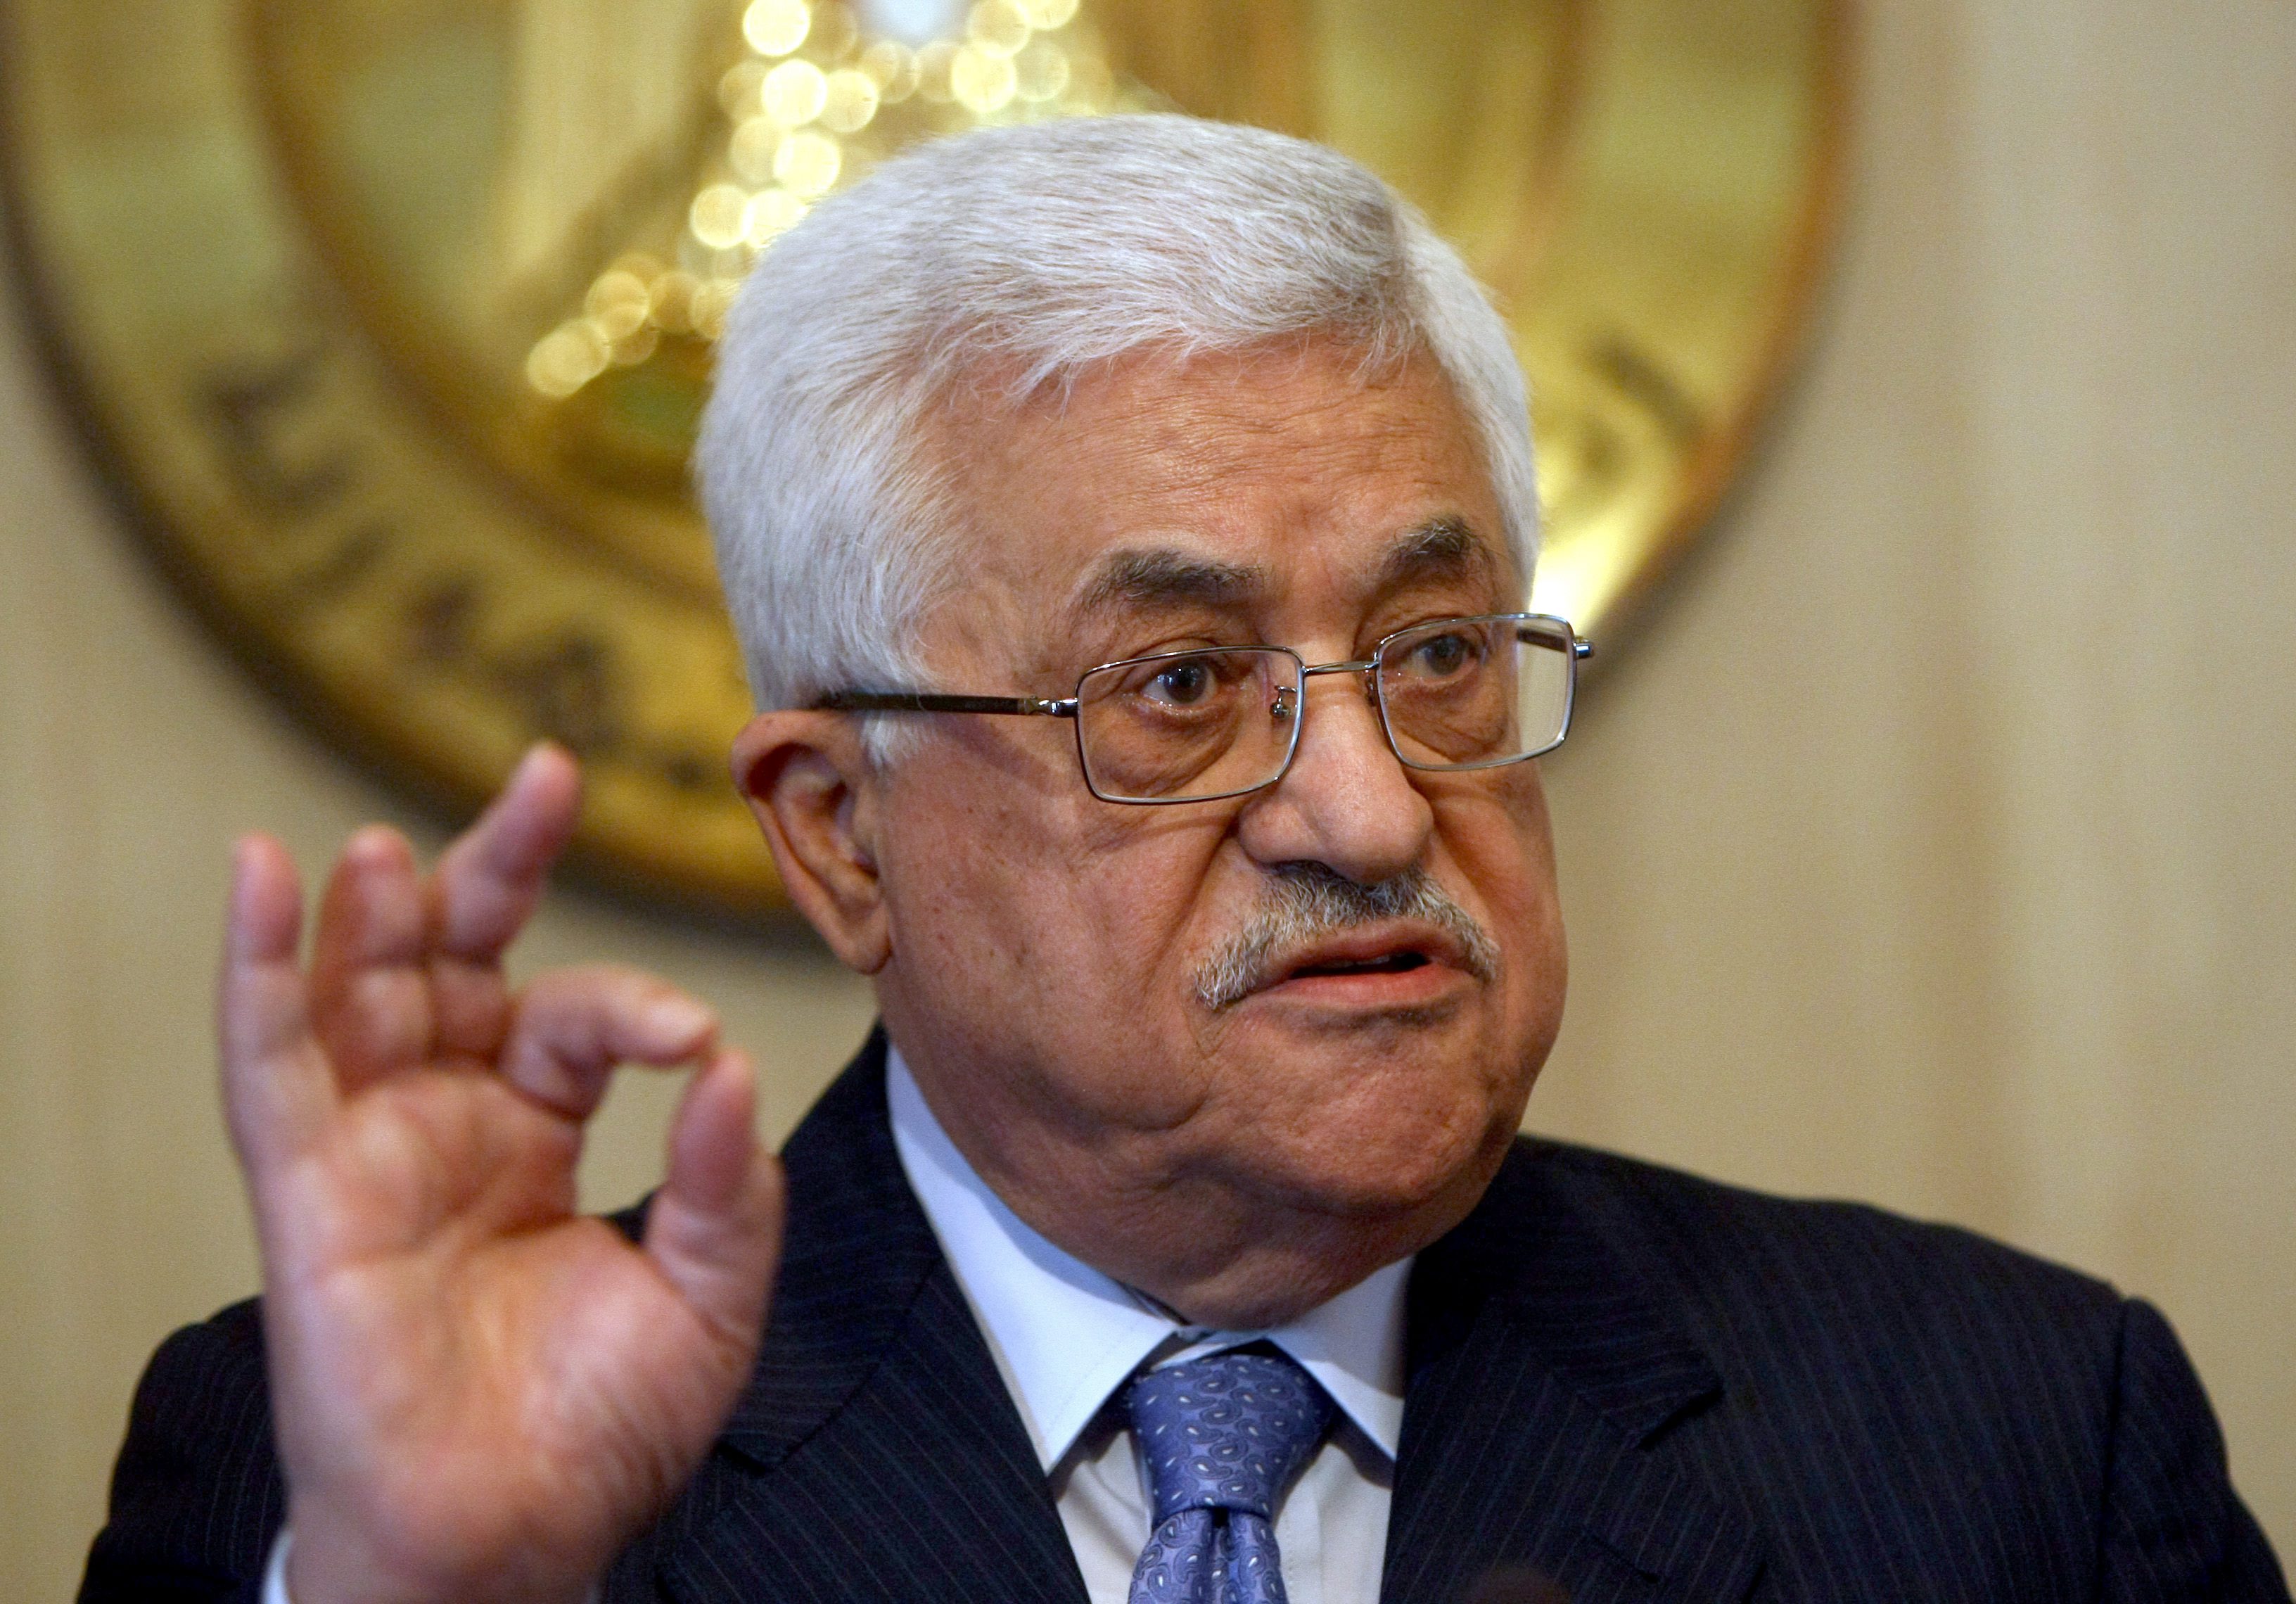 El presidente de Palestina pedirá en la ONU el fin de los asentamientos israelíes en tierras palestinas. (Foto: Archivo)